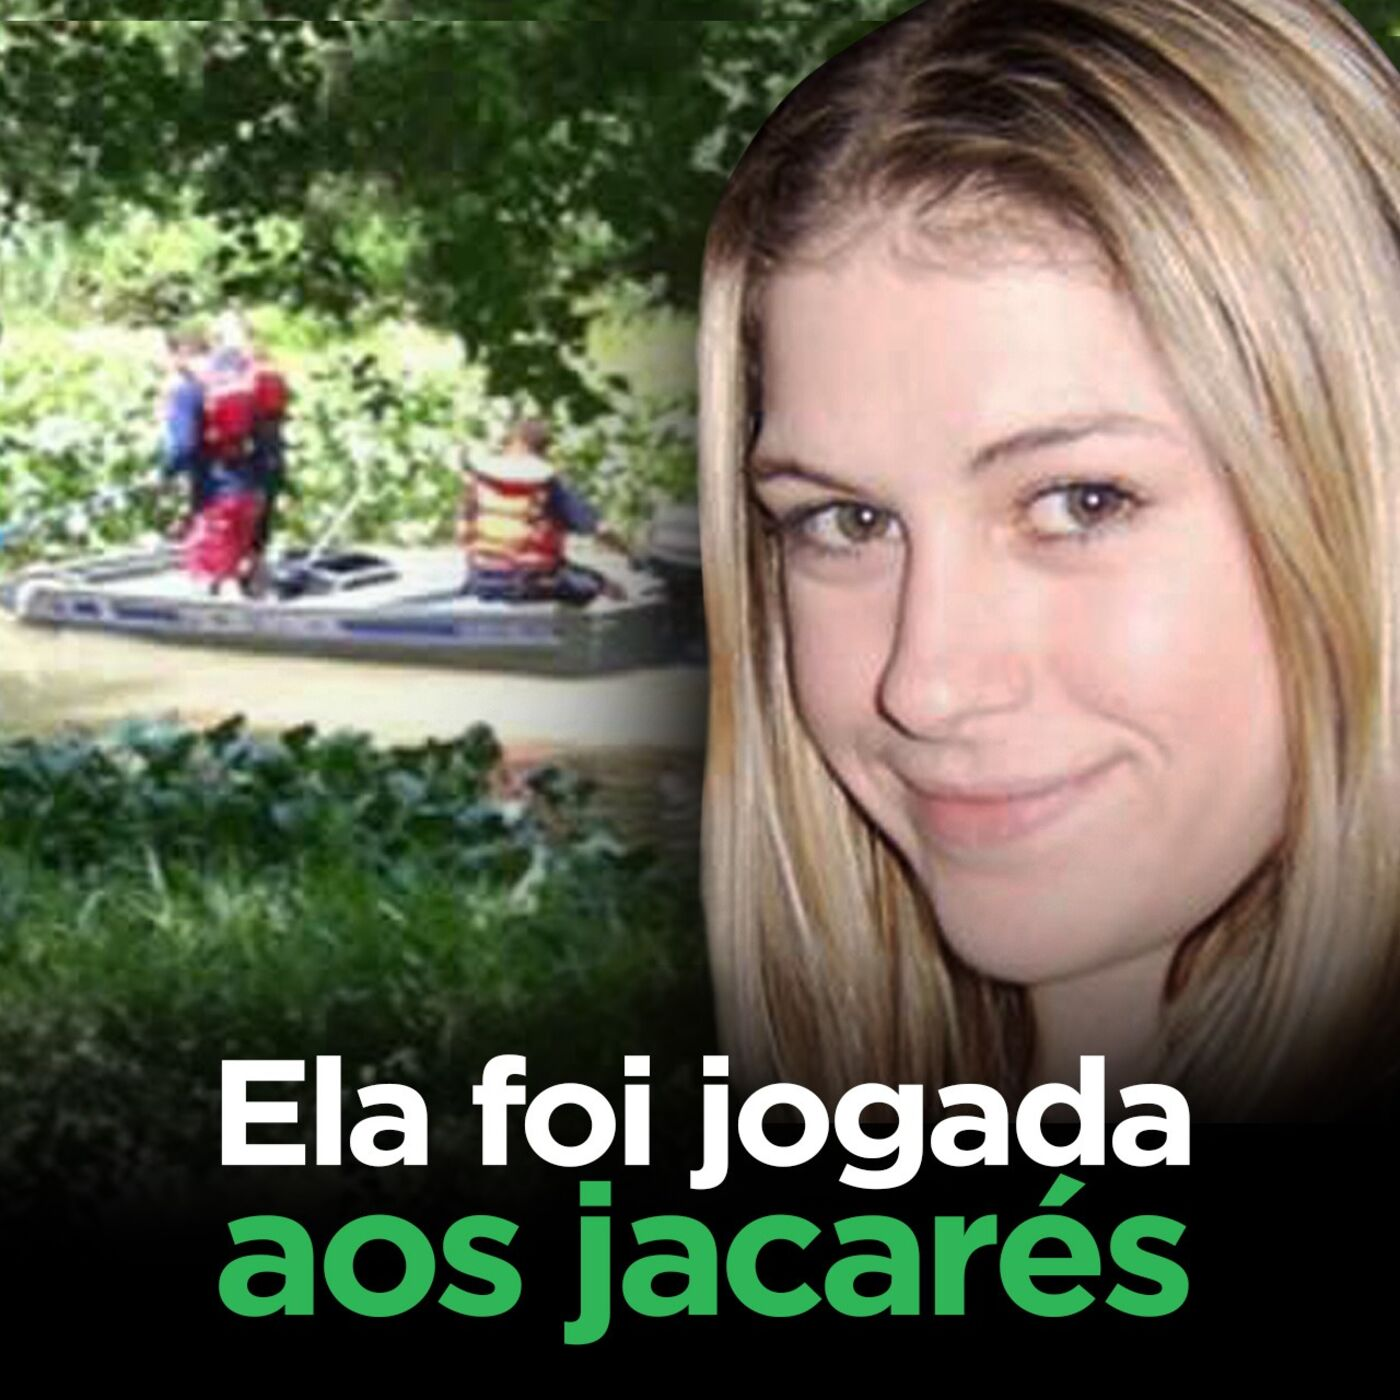 Ela foi jogada num lago com JACARÉS pelo EX MARIDO | Laura Ackerson